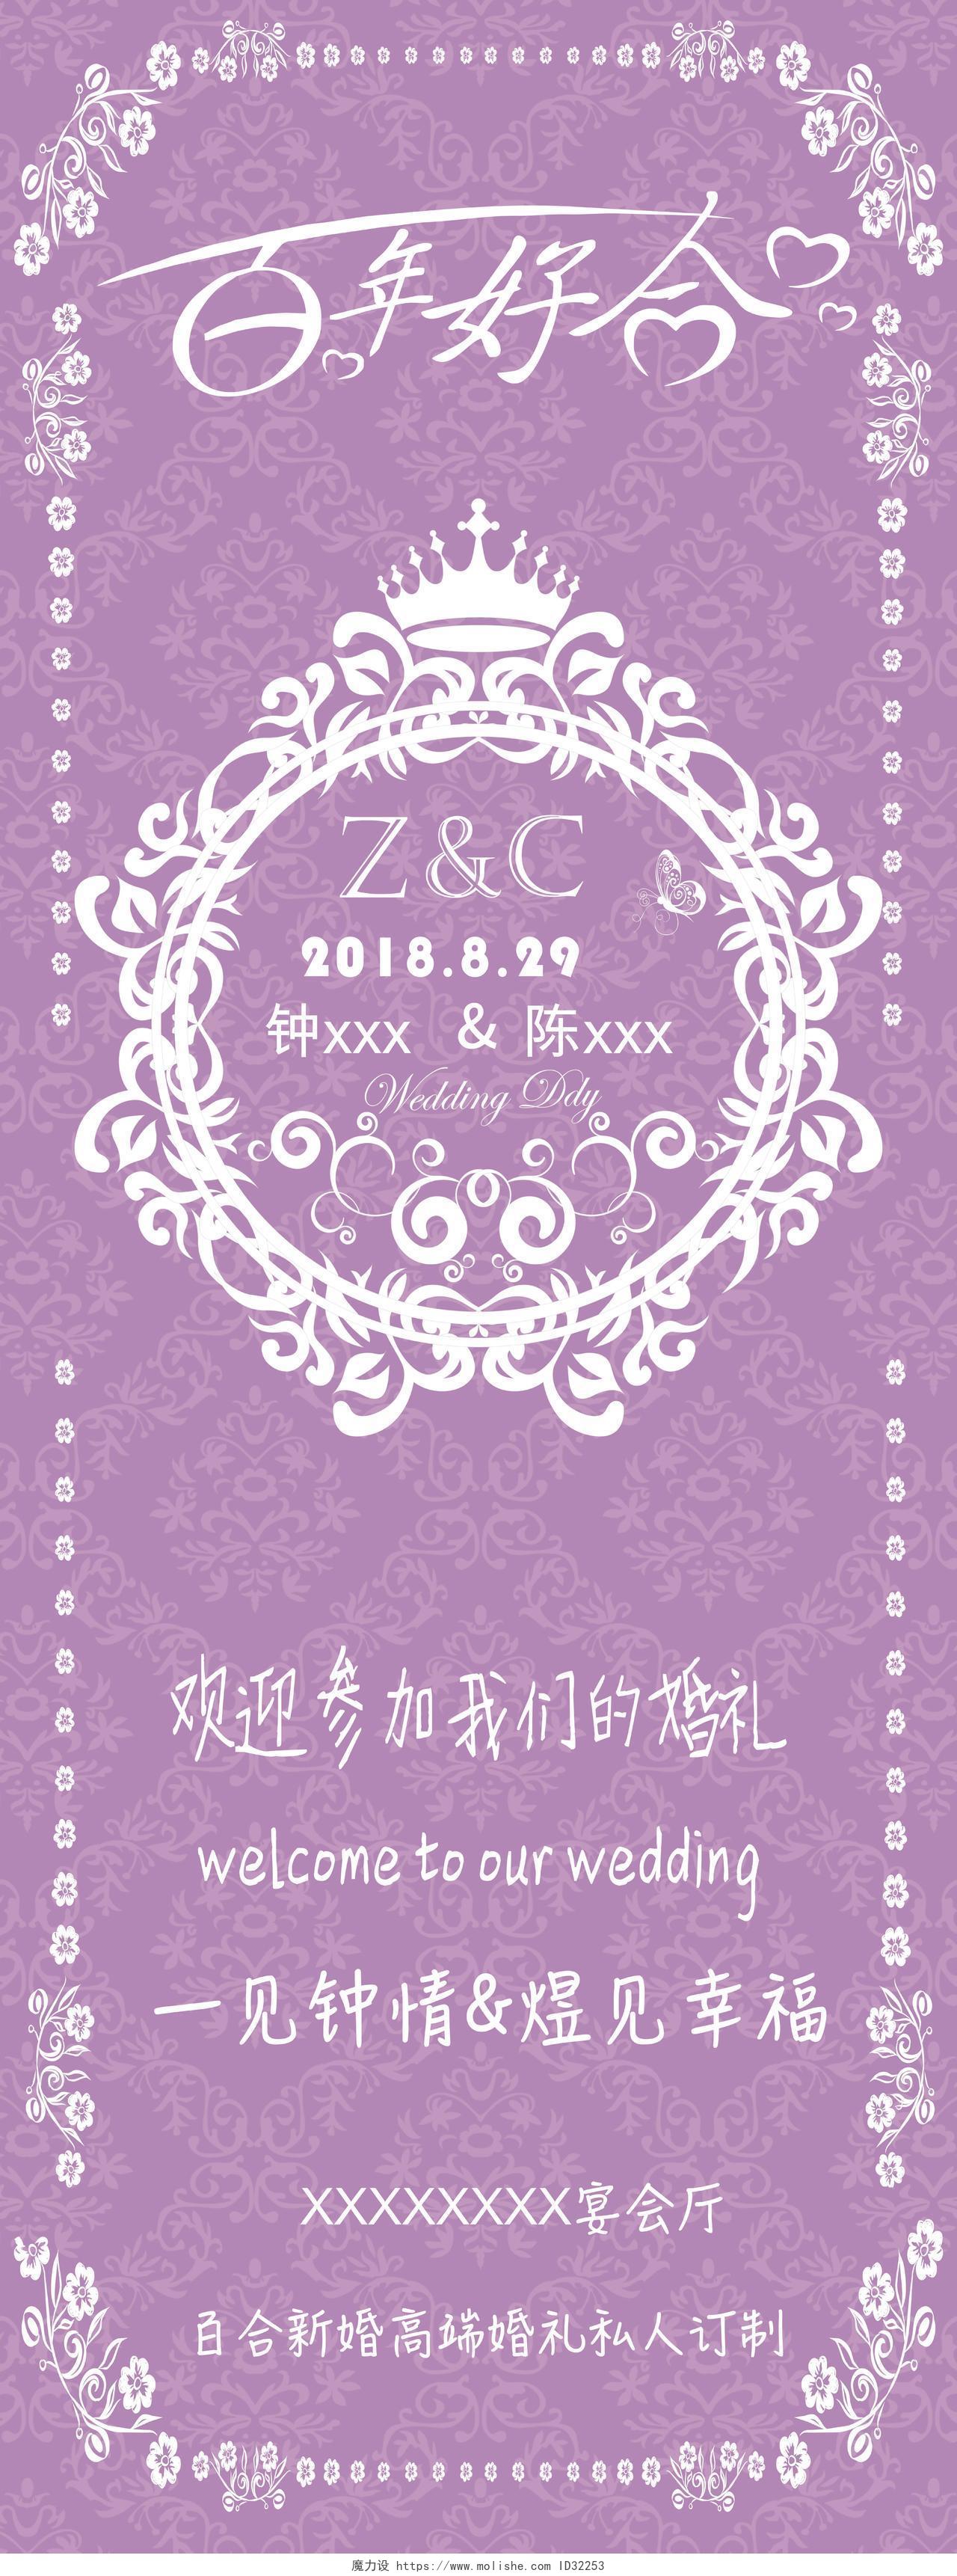 紫色浪漫风格欧式图腾结婚婚礼婚庆海报迎宾易拉宝展架